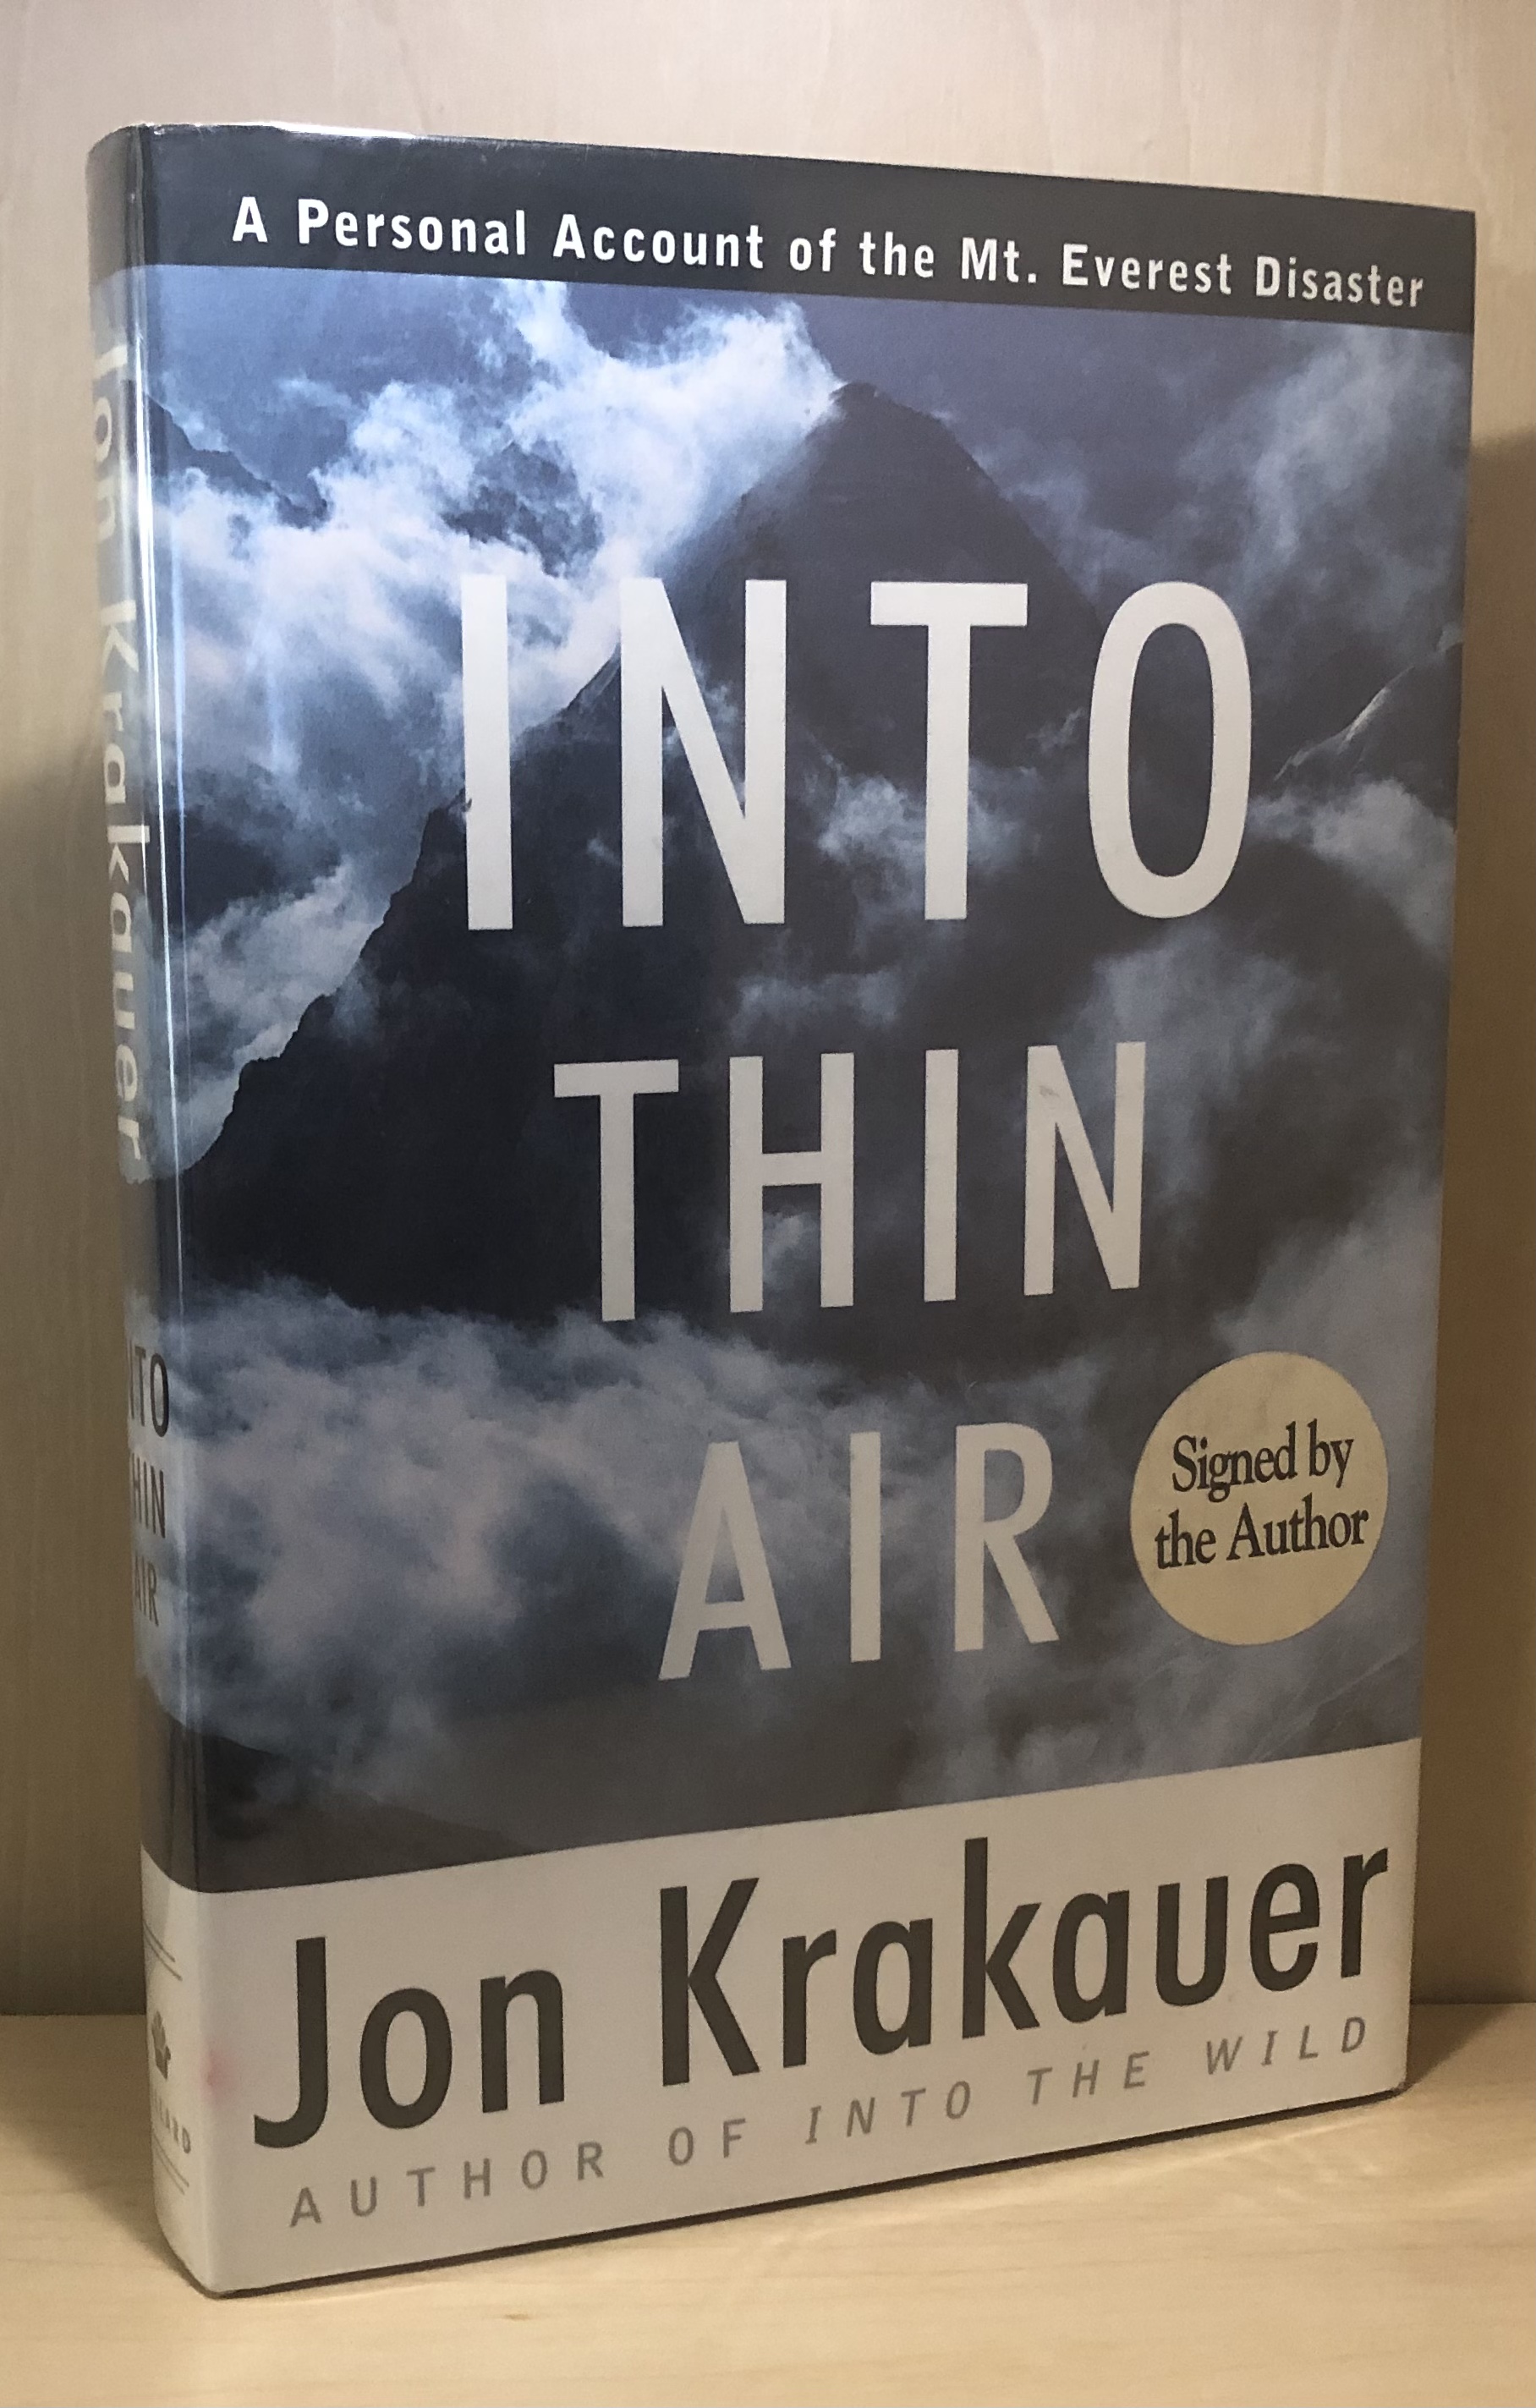 Into Thin Air - Krakauer, Jon